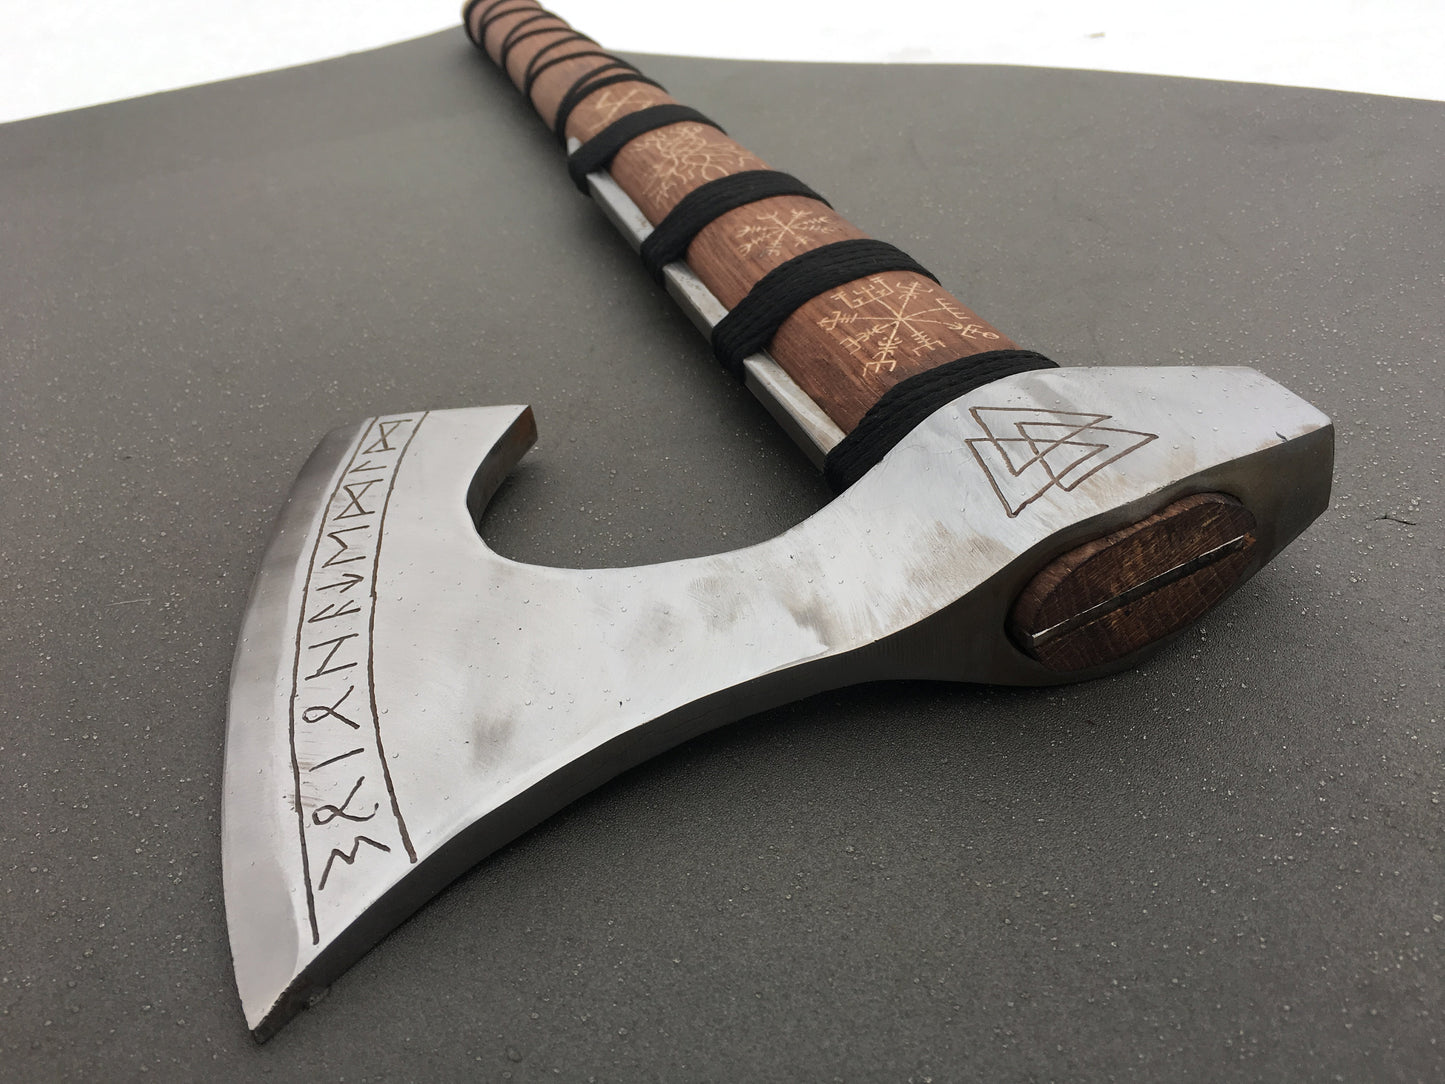 Runic axe, axe gift, Perun axe, pagan axe, viking axe, vegvisir, helm of awe, Yggdrasil,bearded axe,Norse axe,mjolnir,viking weapon